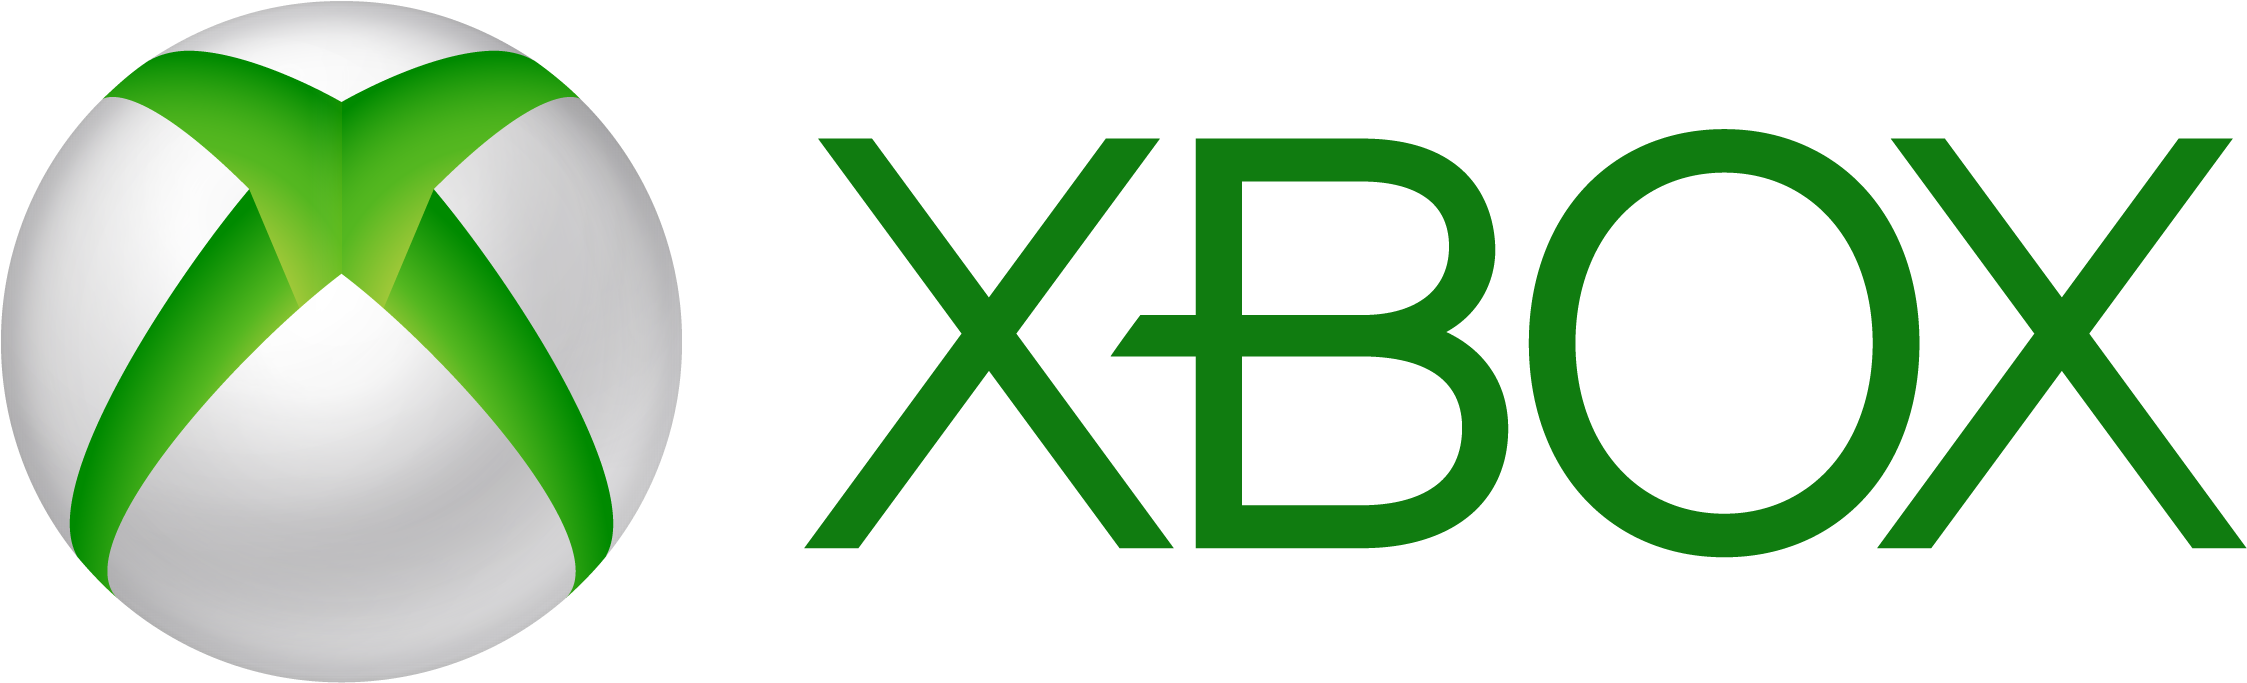 Microsoft Logo For Xbox One - Microsoft Xbox One Xbox One Wireless Controller - Black (2265x697)